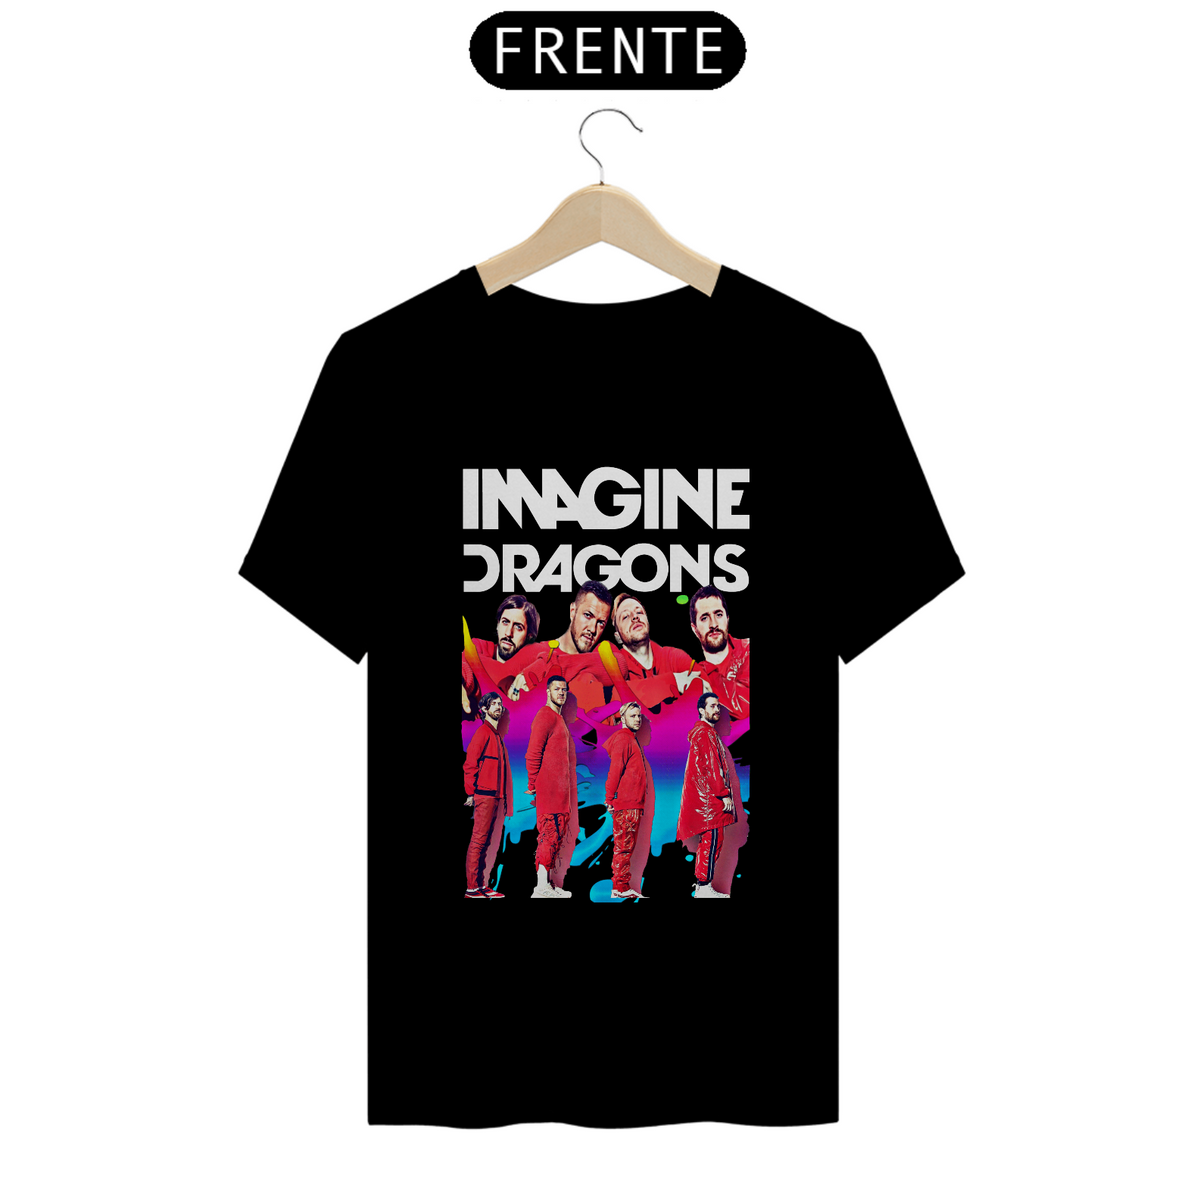 Nome do produto: Camiseta Quality - Imagine Dragons 